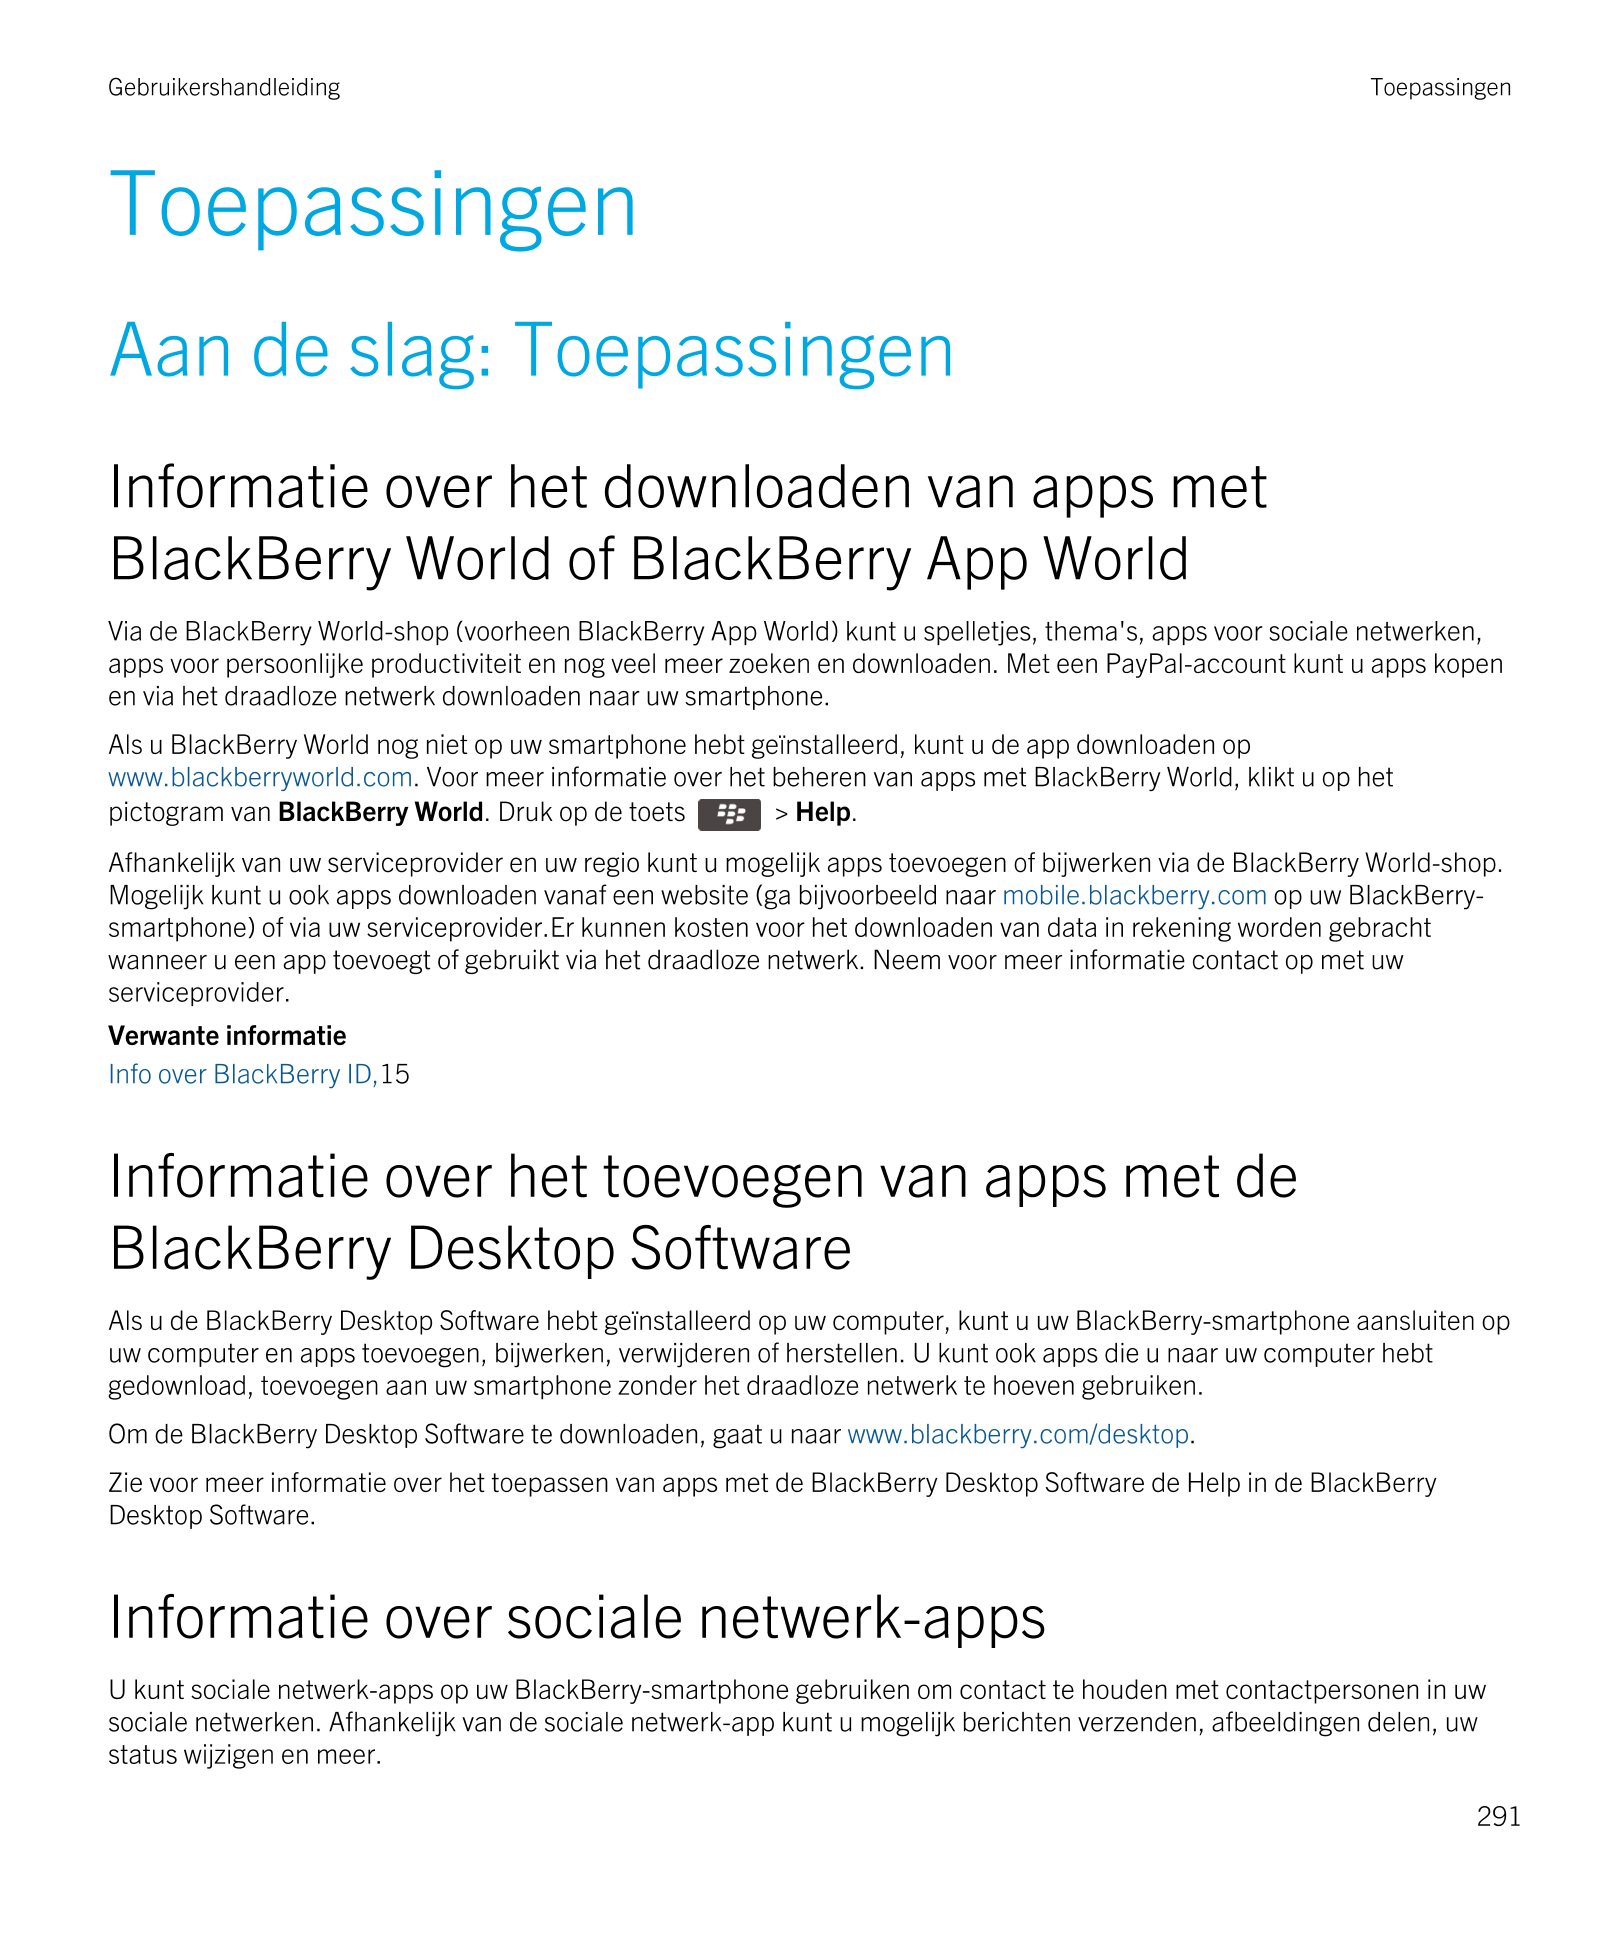 Gebruikershandleiding Toepassingen
Toepassingen
Aan de slag: Toepassingen
Informatie over het downloaden van apps met 
BlackBerr